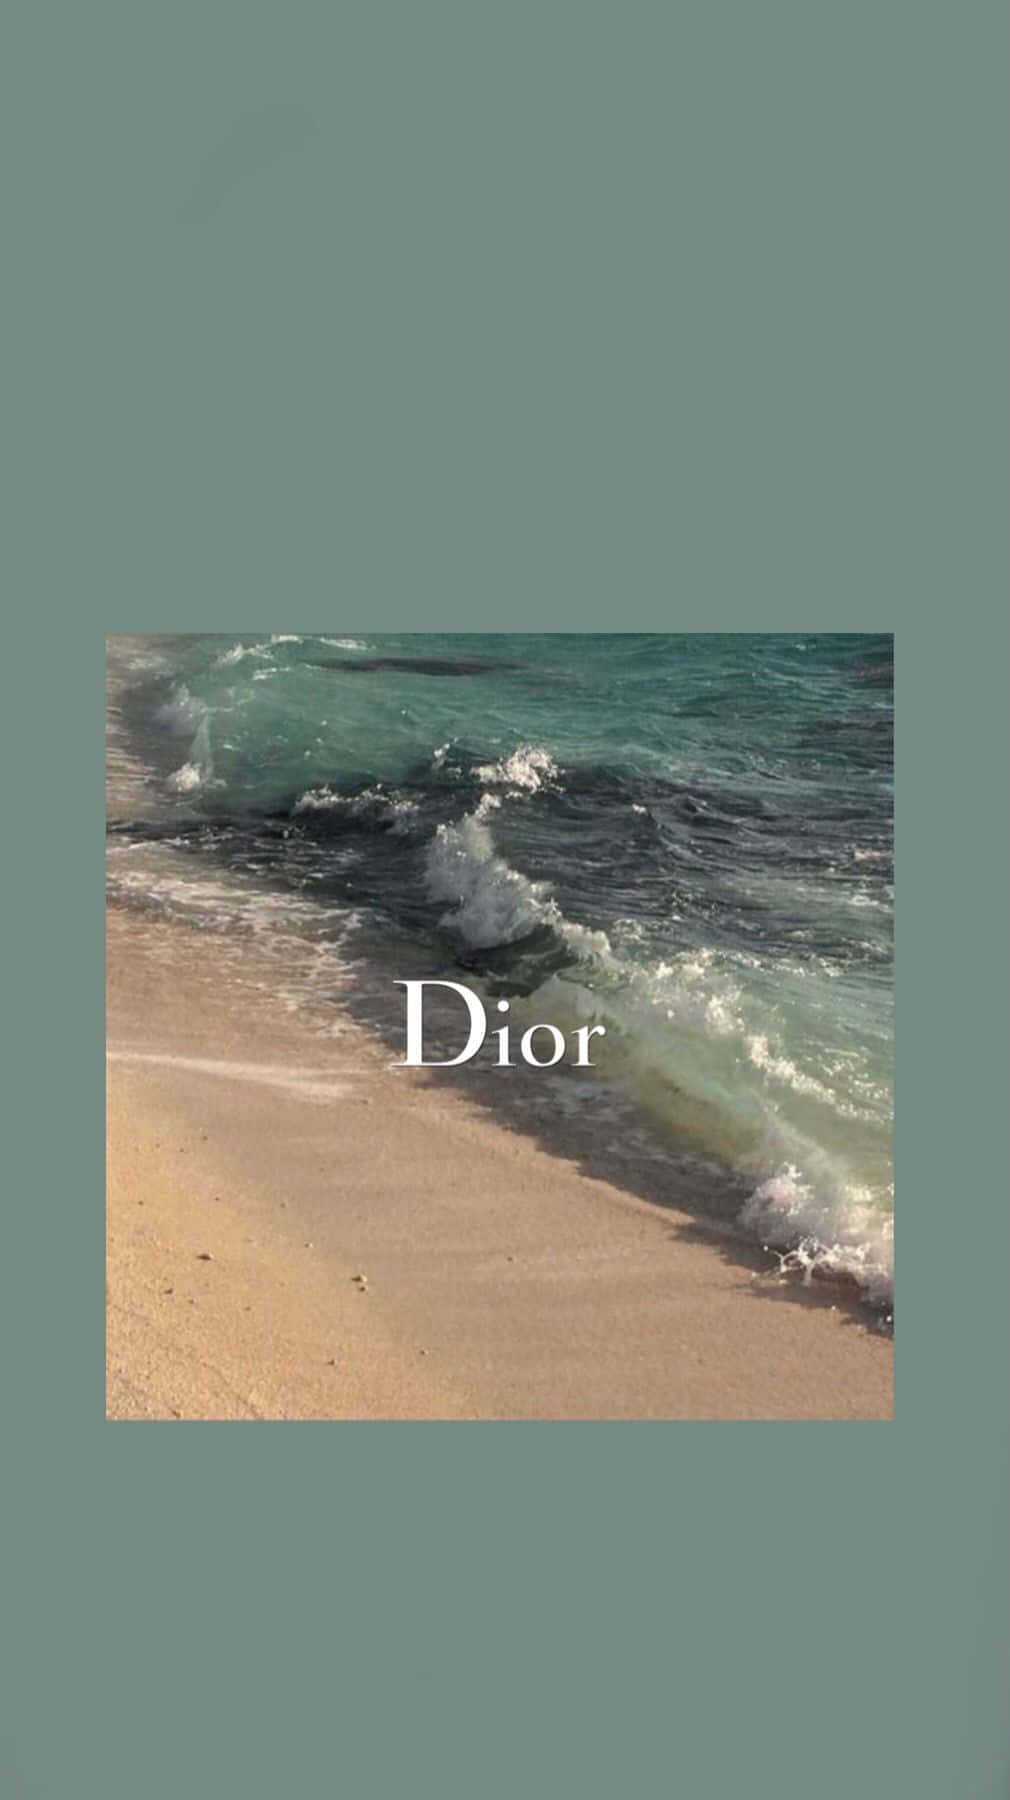 Lassensie Ihren Stil Für Sich Selbst Sprechen Mit Dem Schicken Look Von Dior.